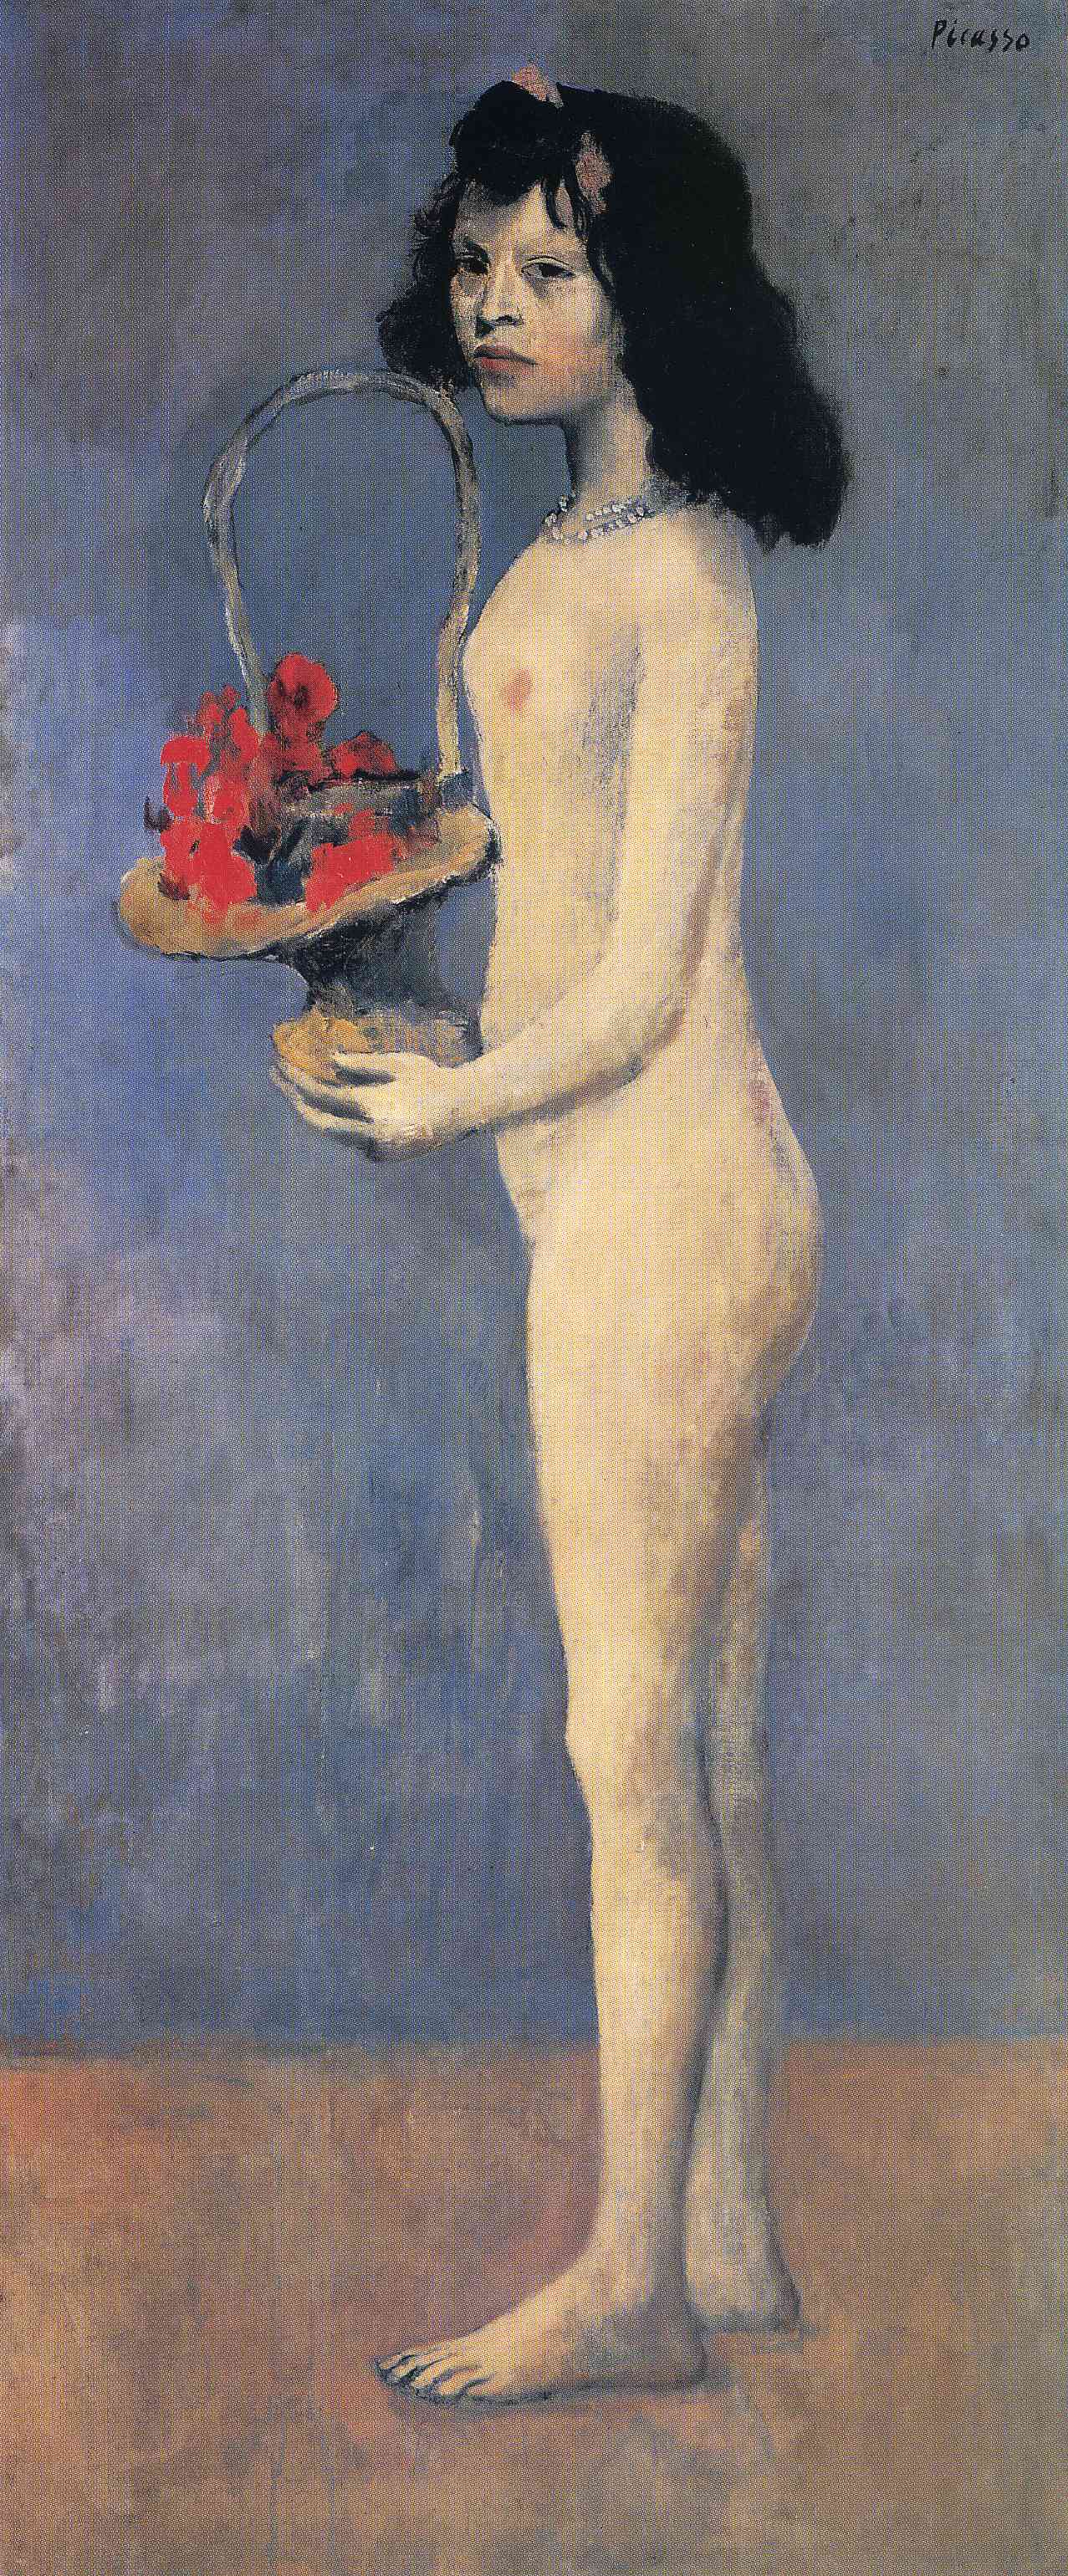 لوحة فتاة عارية حزينة فى يدها سلة زهور بتوقيع بيكاسو